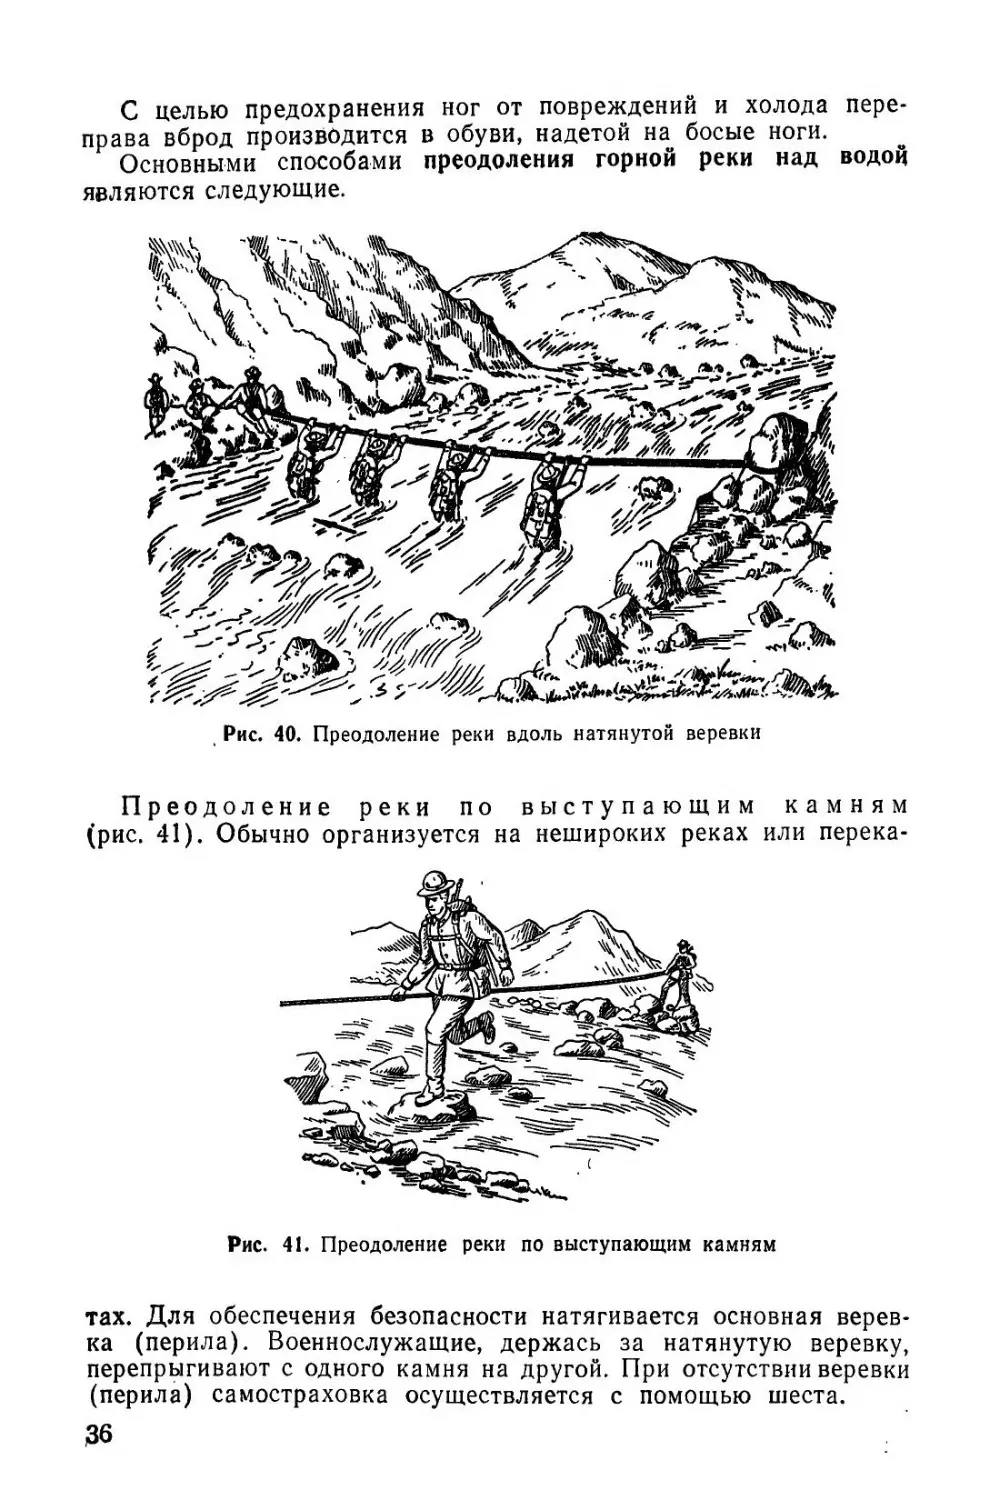 Методическое пособие Обучение мотострелковых подразделений боевым действиям в горах (1979)_37